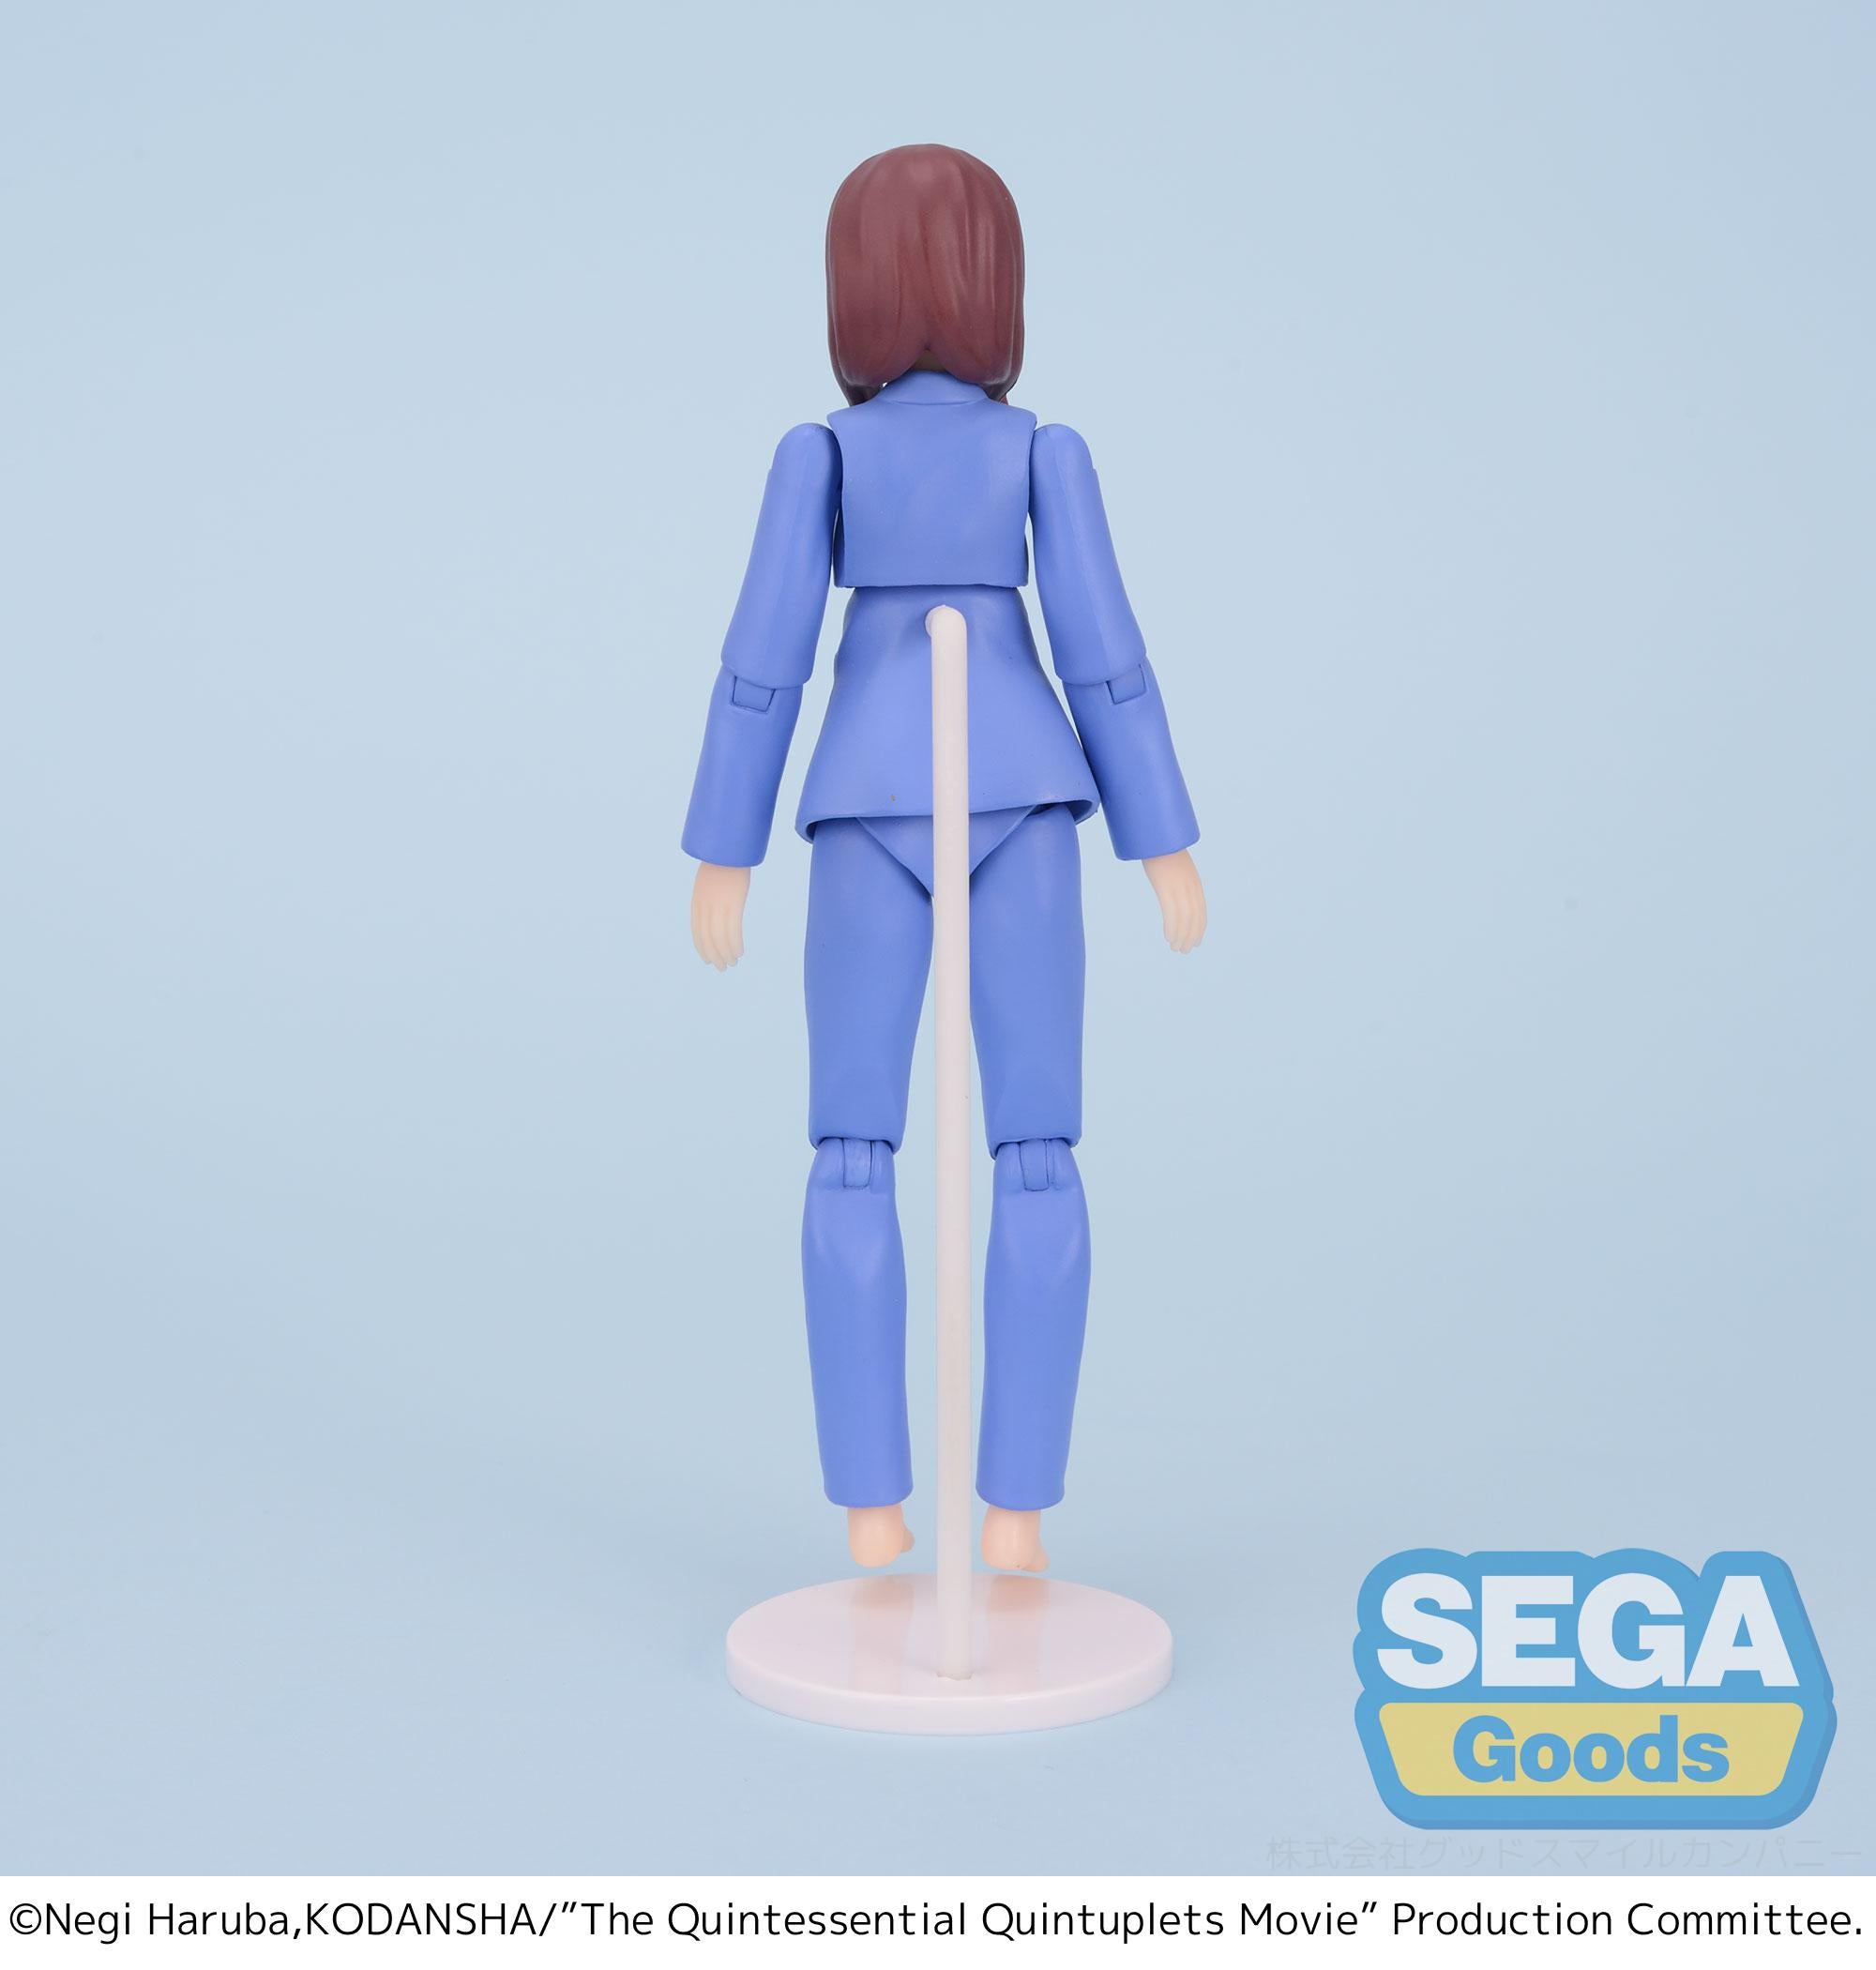 Sega Figures Movingood: The Quintessential Quintuplets - Miku Nakano